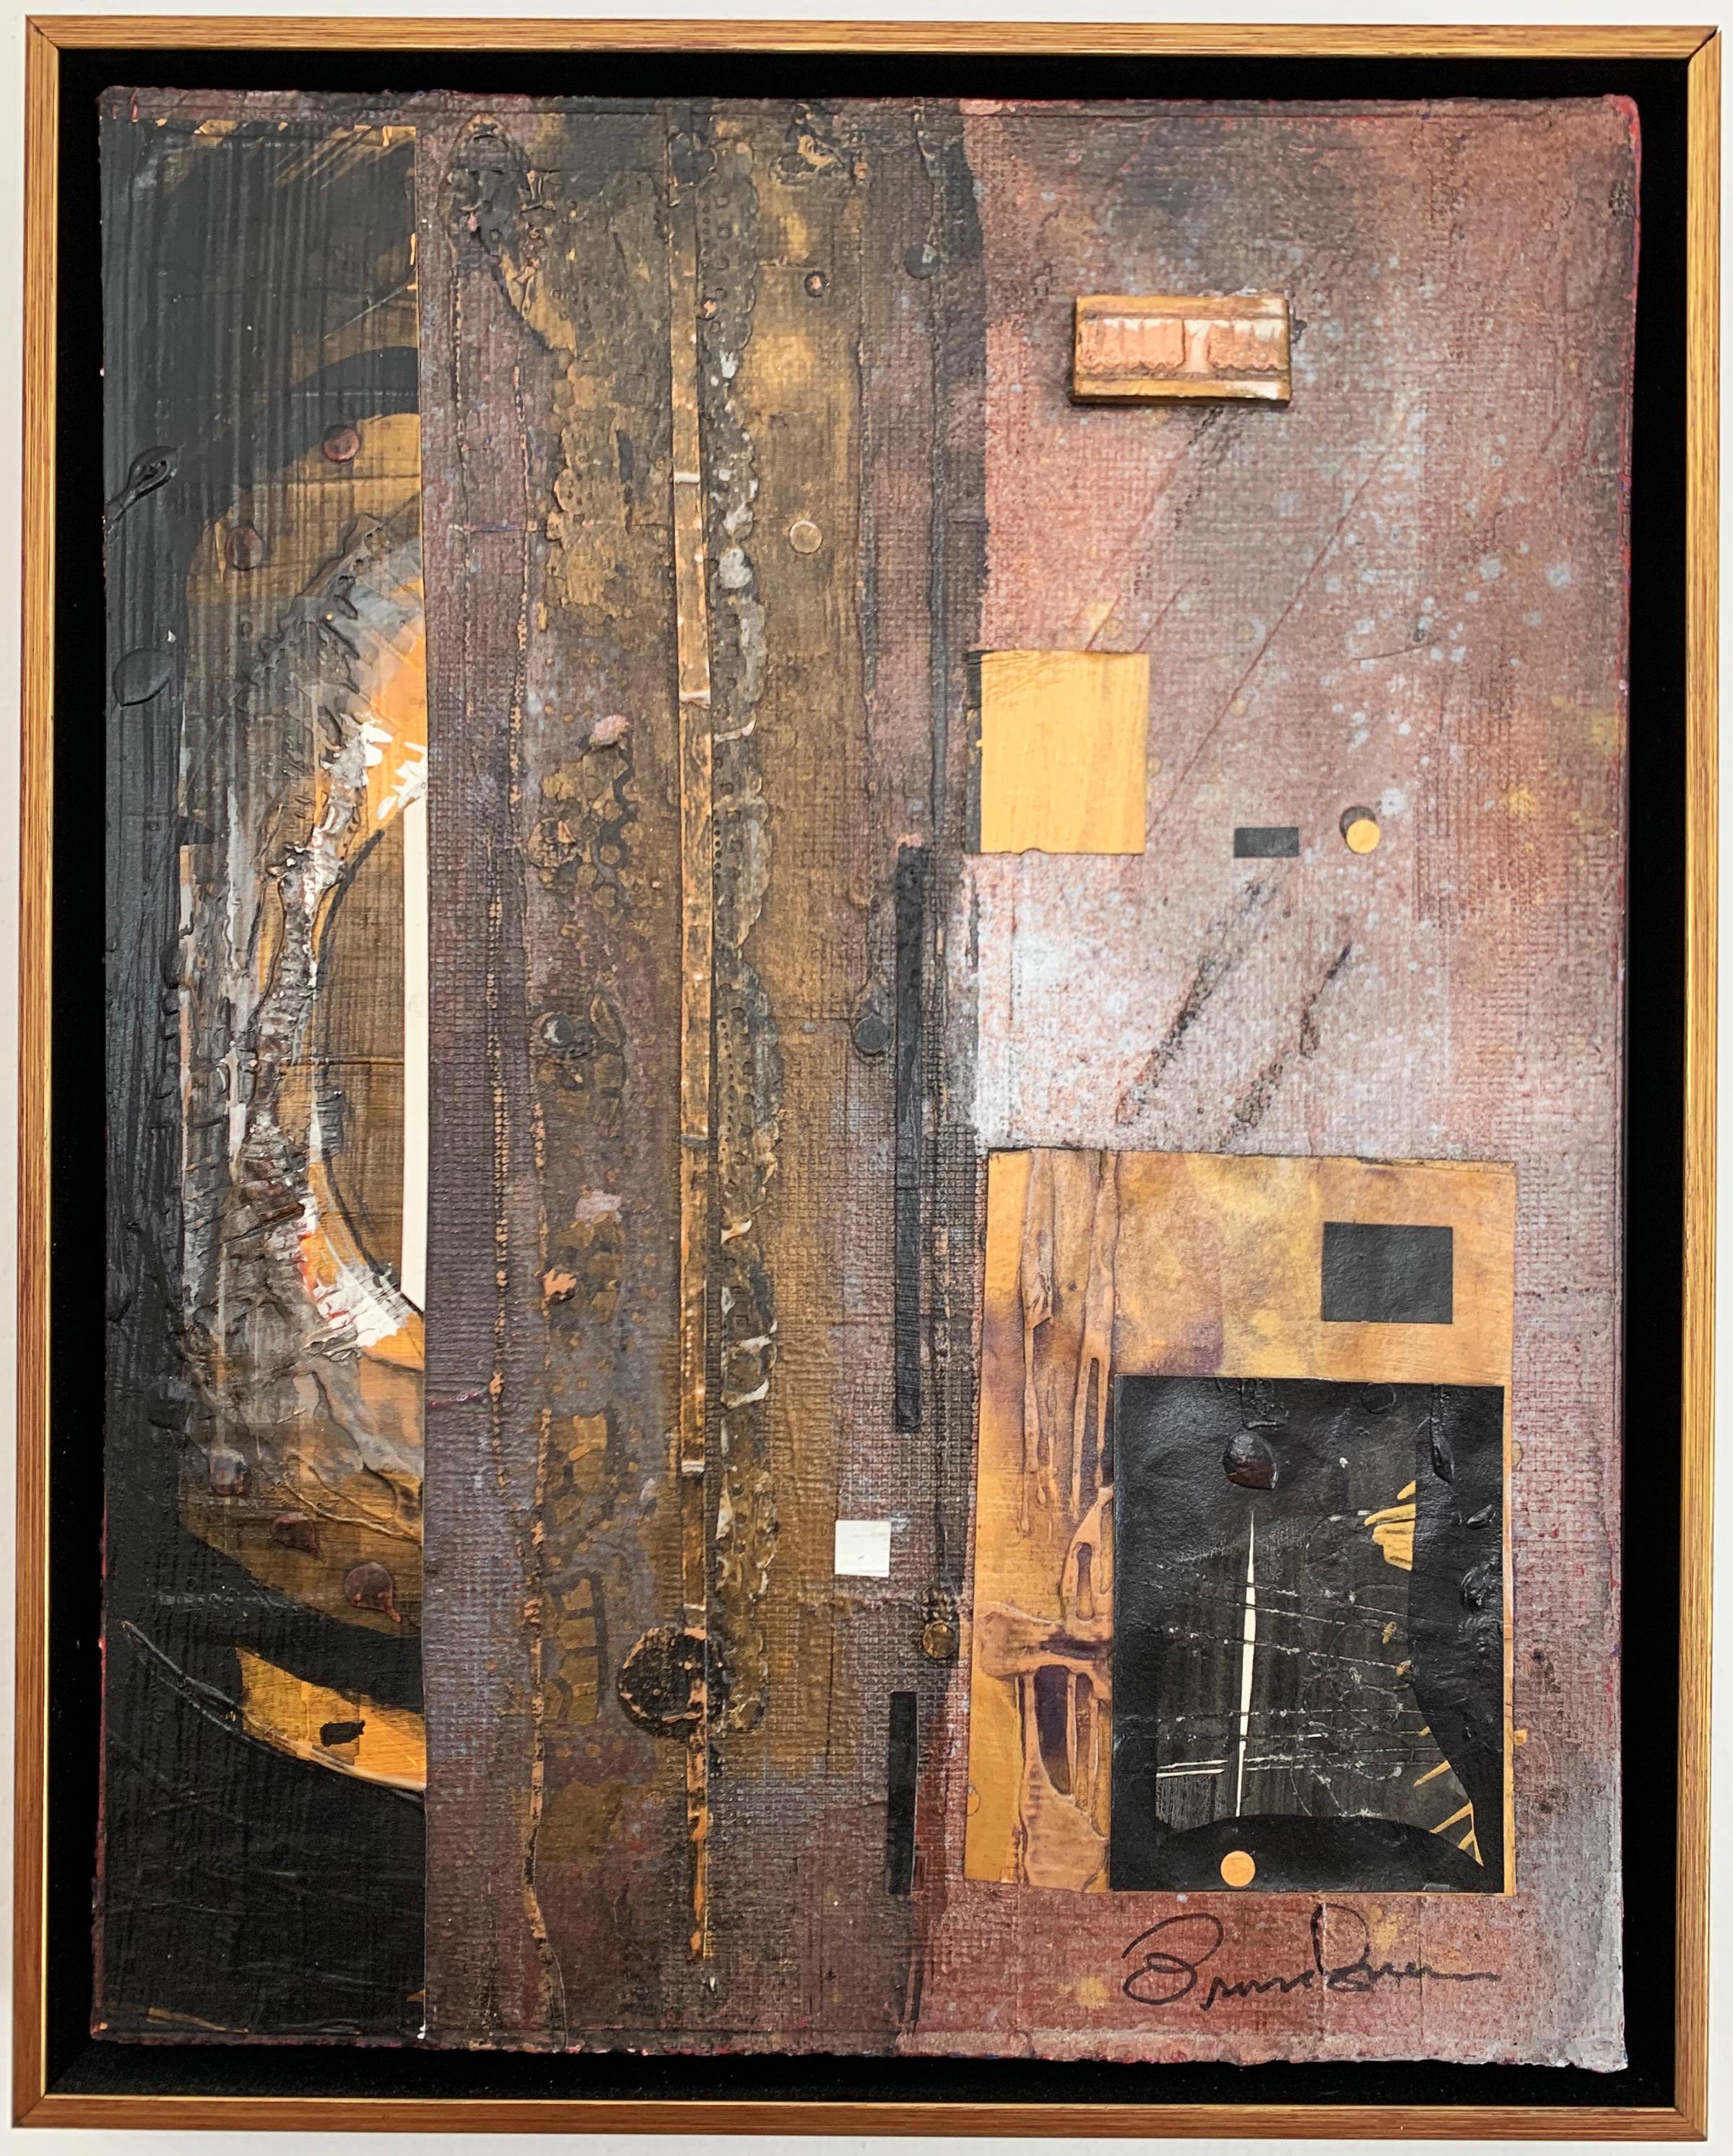 "Composition" des amerikanischen Künstlers Robert Branham (1926-2012) ist ein abstraktes Gemischtwerk auf Leinwand, das in den späten 90er Jahren entstand. Das abstrakte Gemälde zeigt verschiedene Materialien und Texturen mit gelben, goldenen,